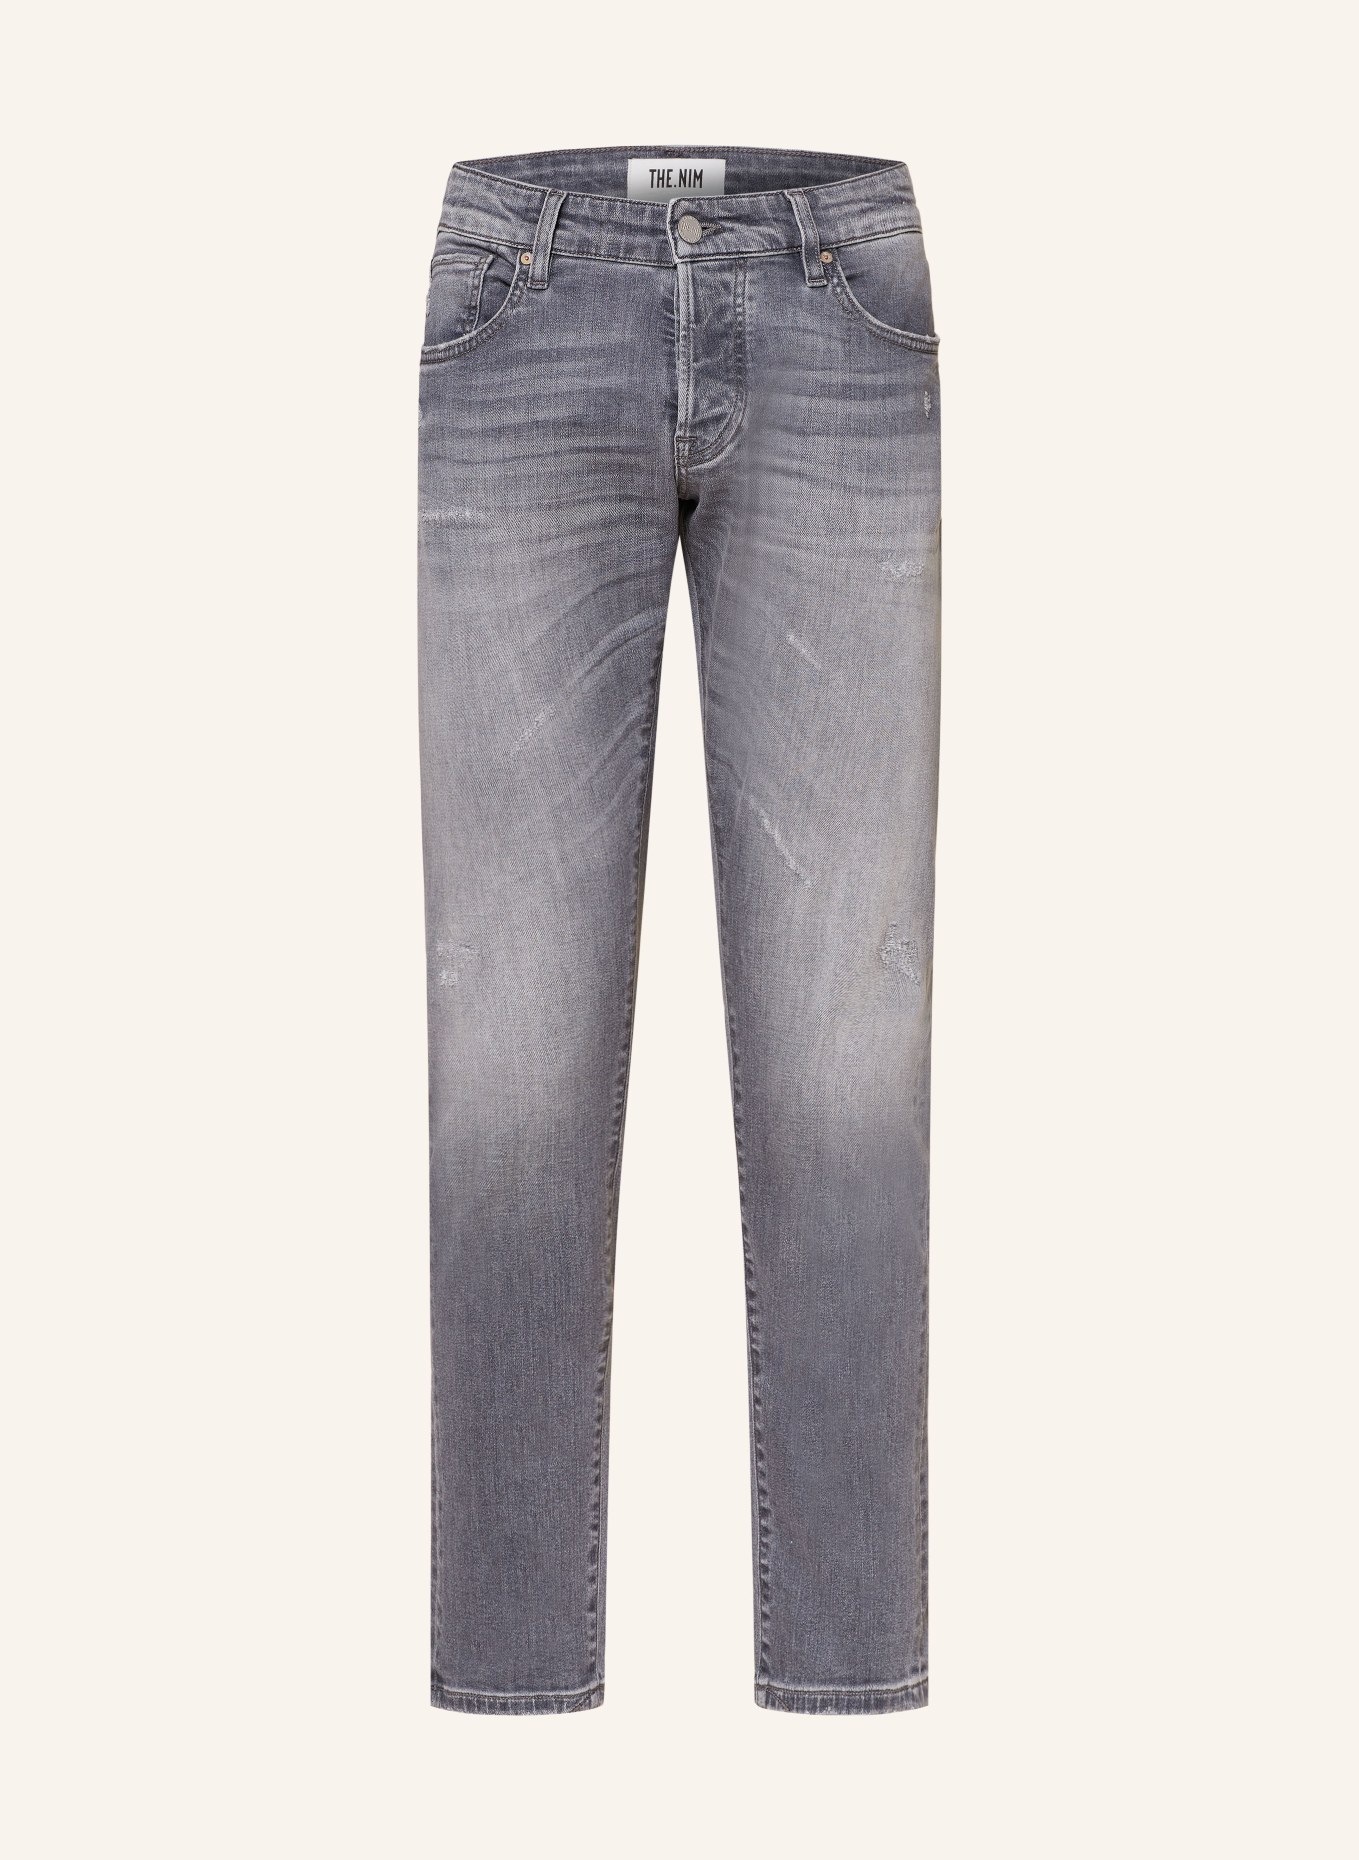 THE.NIM STANDARD Jeans DYLAN Slim Fit, Farbe: W815-GRD GREY DISTRESSED (Bild 1)